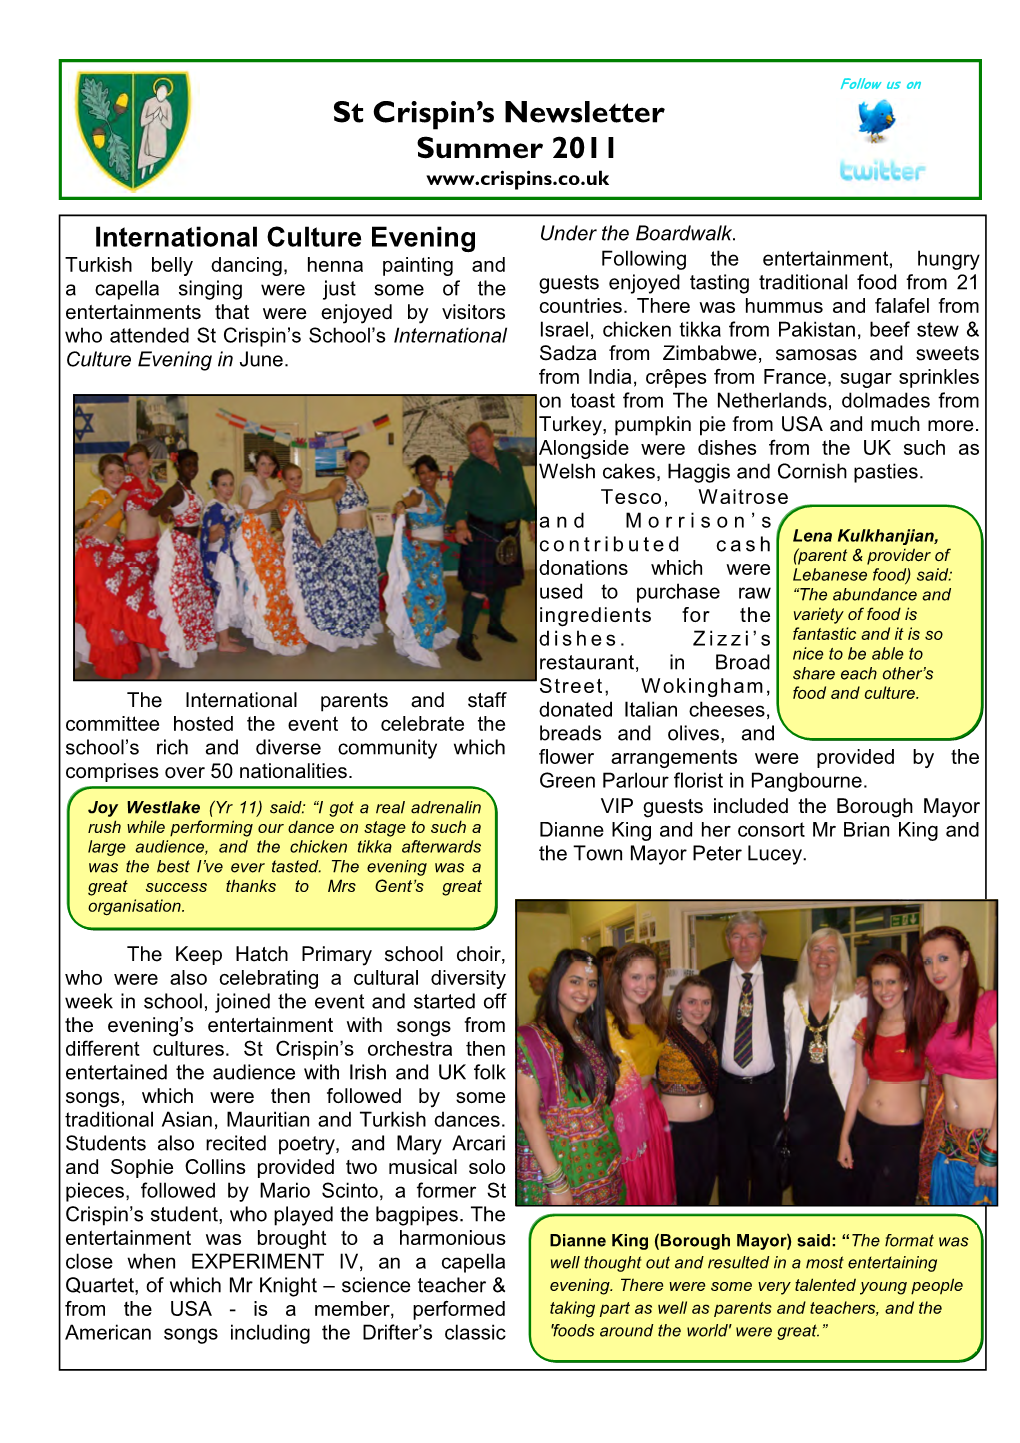 St Crispin's Newsletter Summer 2011